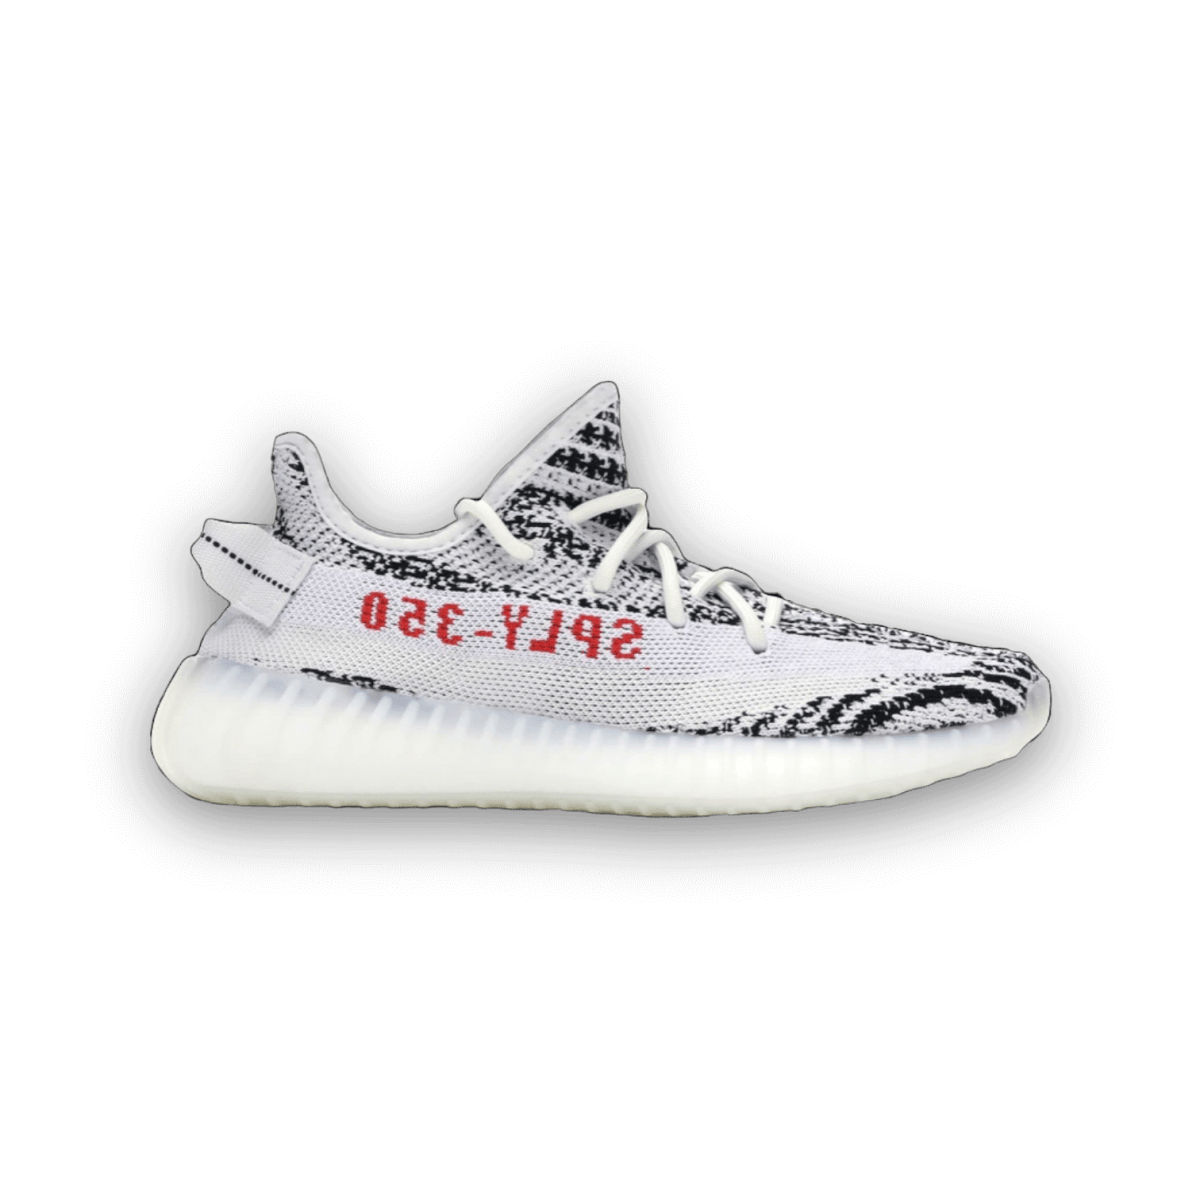 Yeezy Boost 350 V2 Zebra - Low Sneaker - Jawns on Fire Sneakers & Streetwear